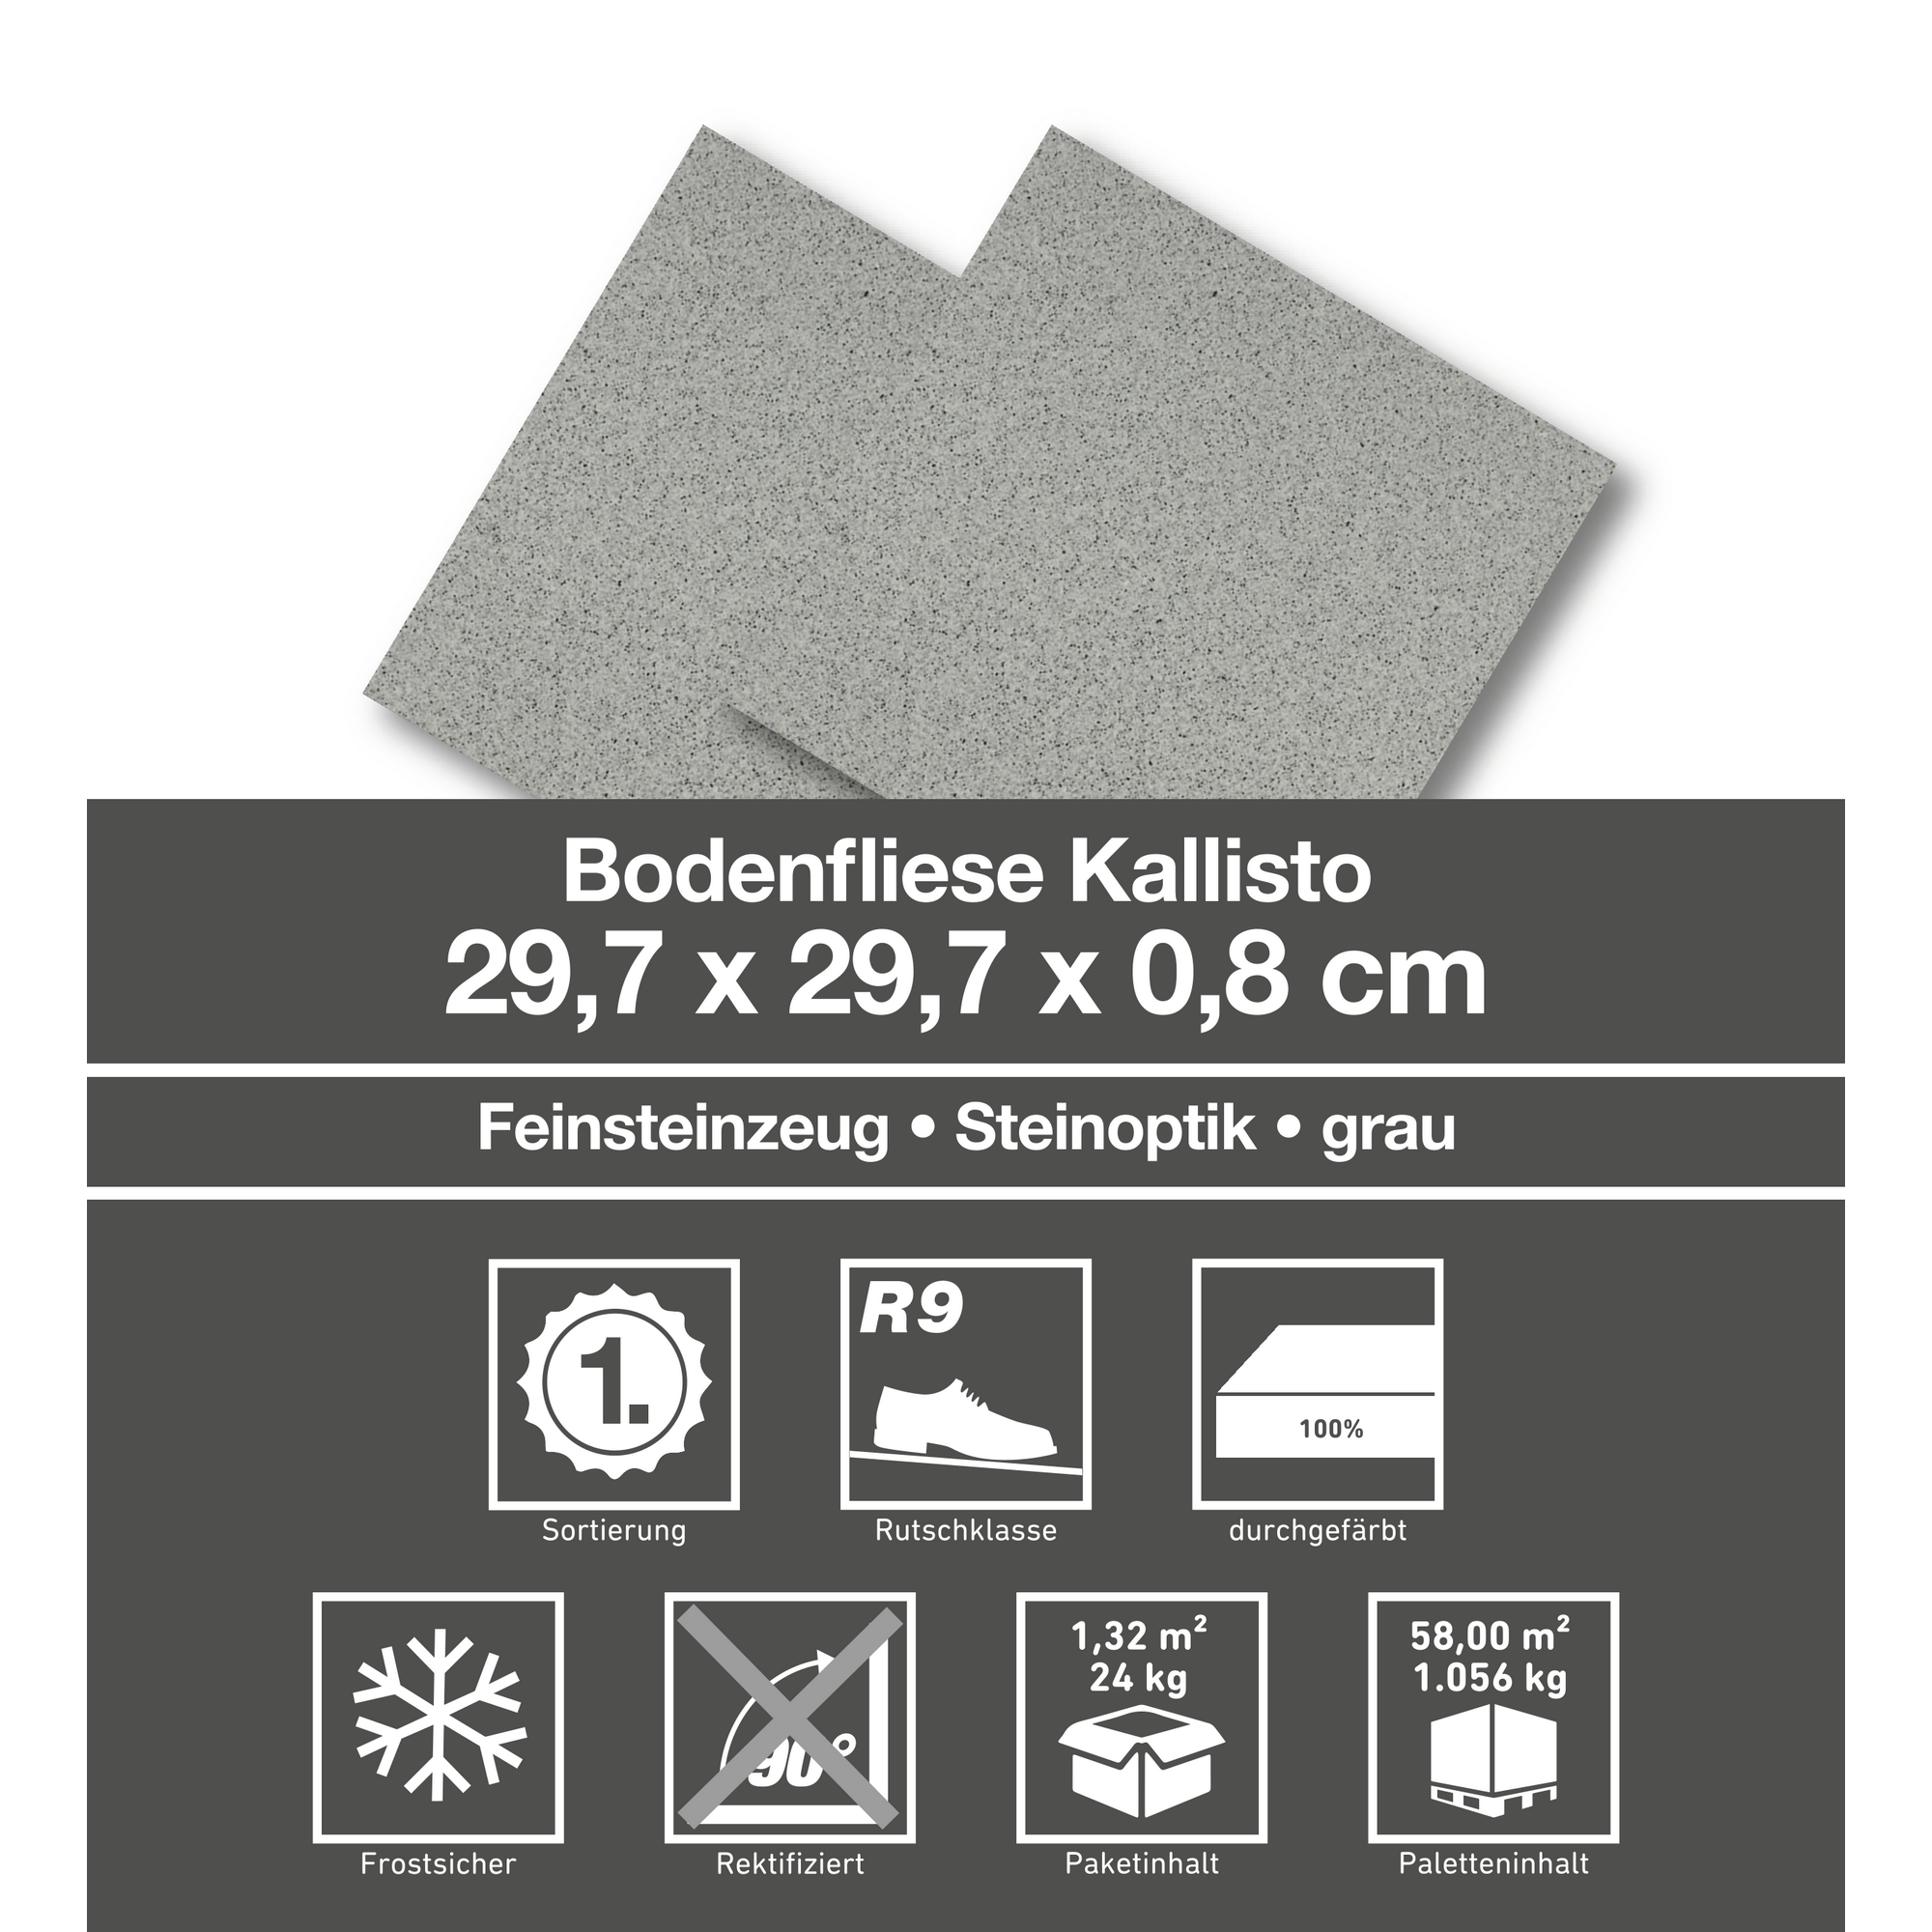 Bodenfliese 'Kallisto' Feinsteinzeug grau 29,7 x 29,7 cm + product picture